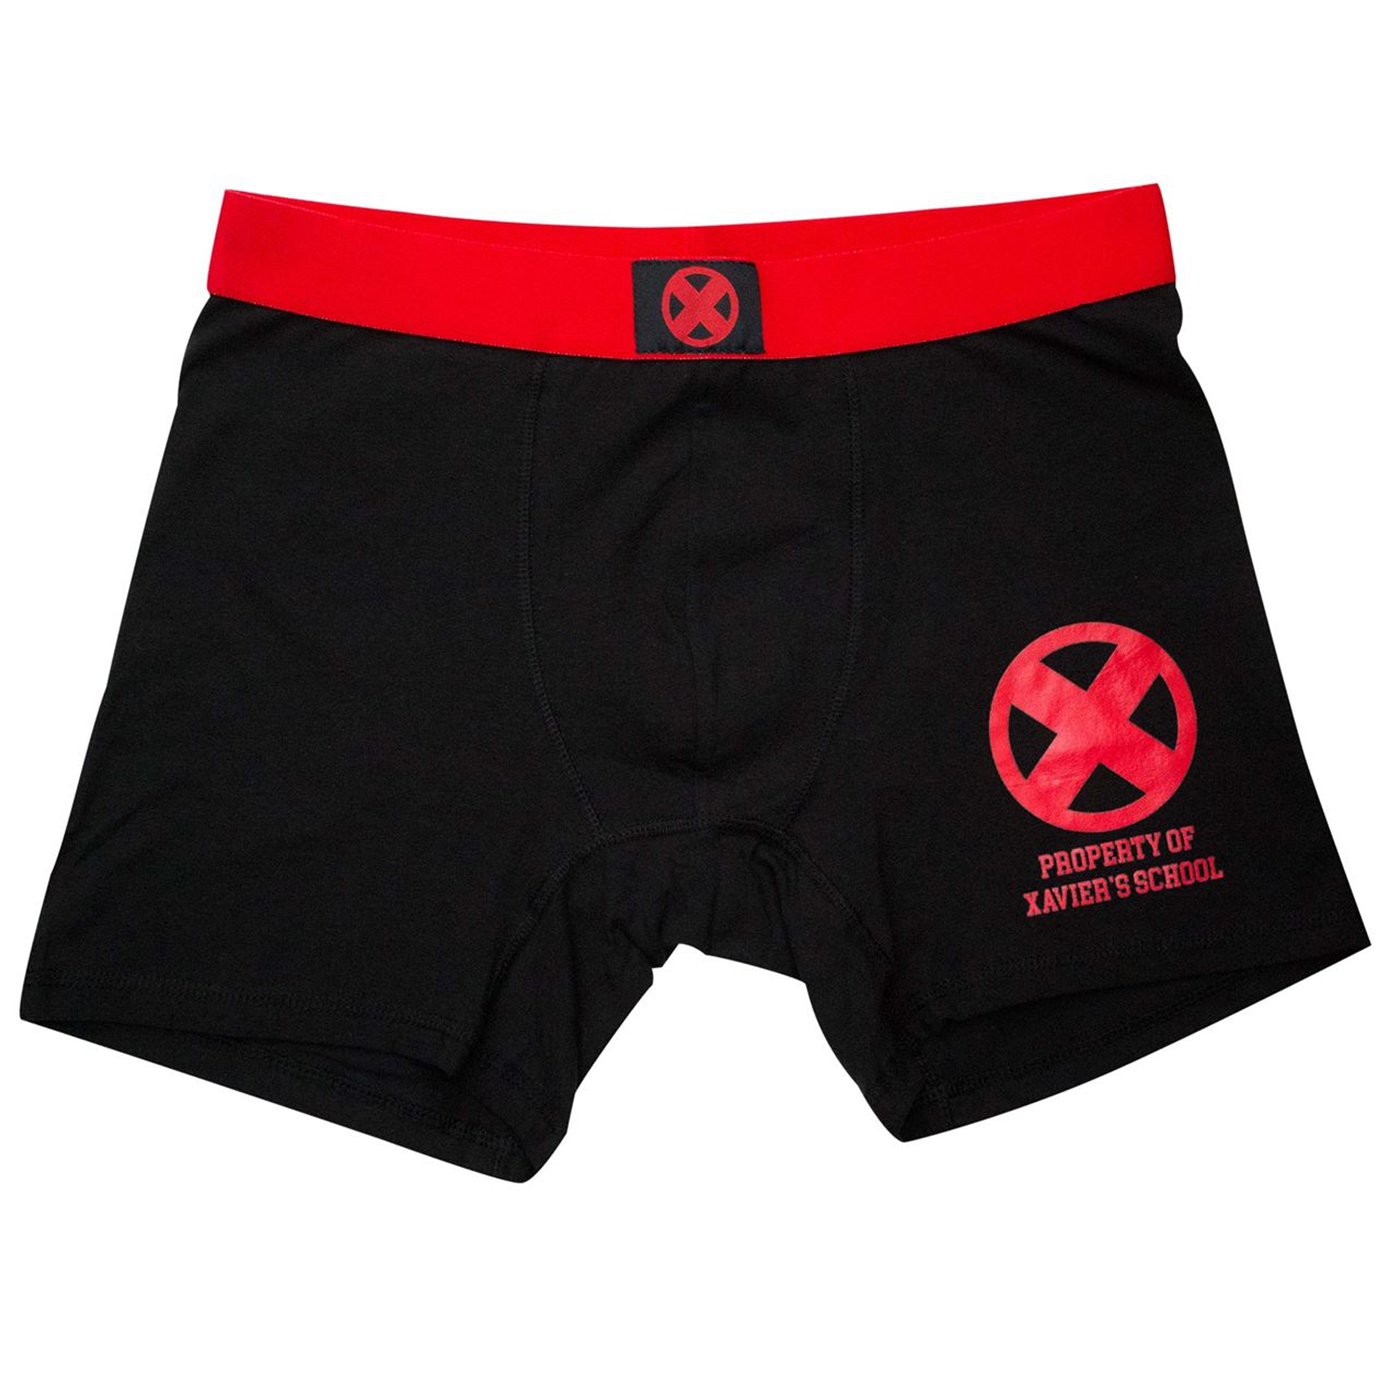 X-Men Property of Xavier School Men's Underwear Boxer Briefs